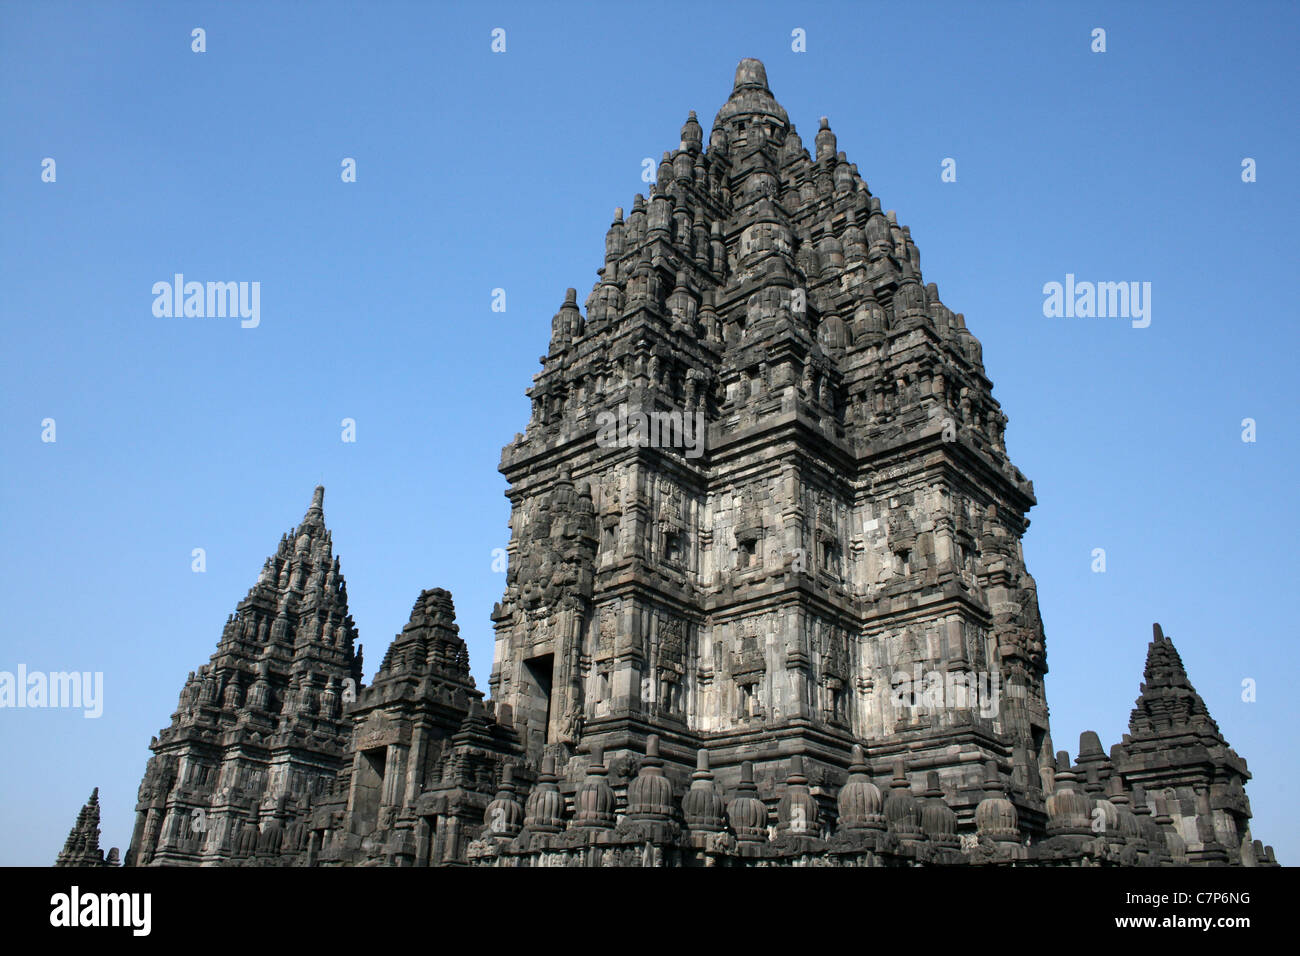 Temple de Prambanan, Central Java, Indonésie Banque D'Images